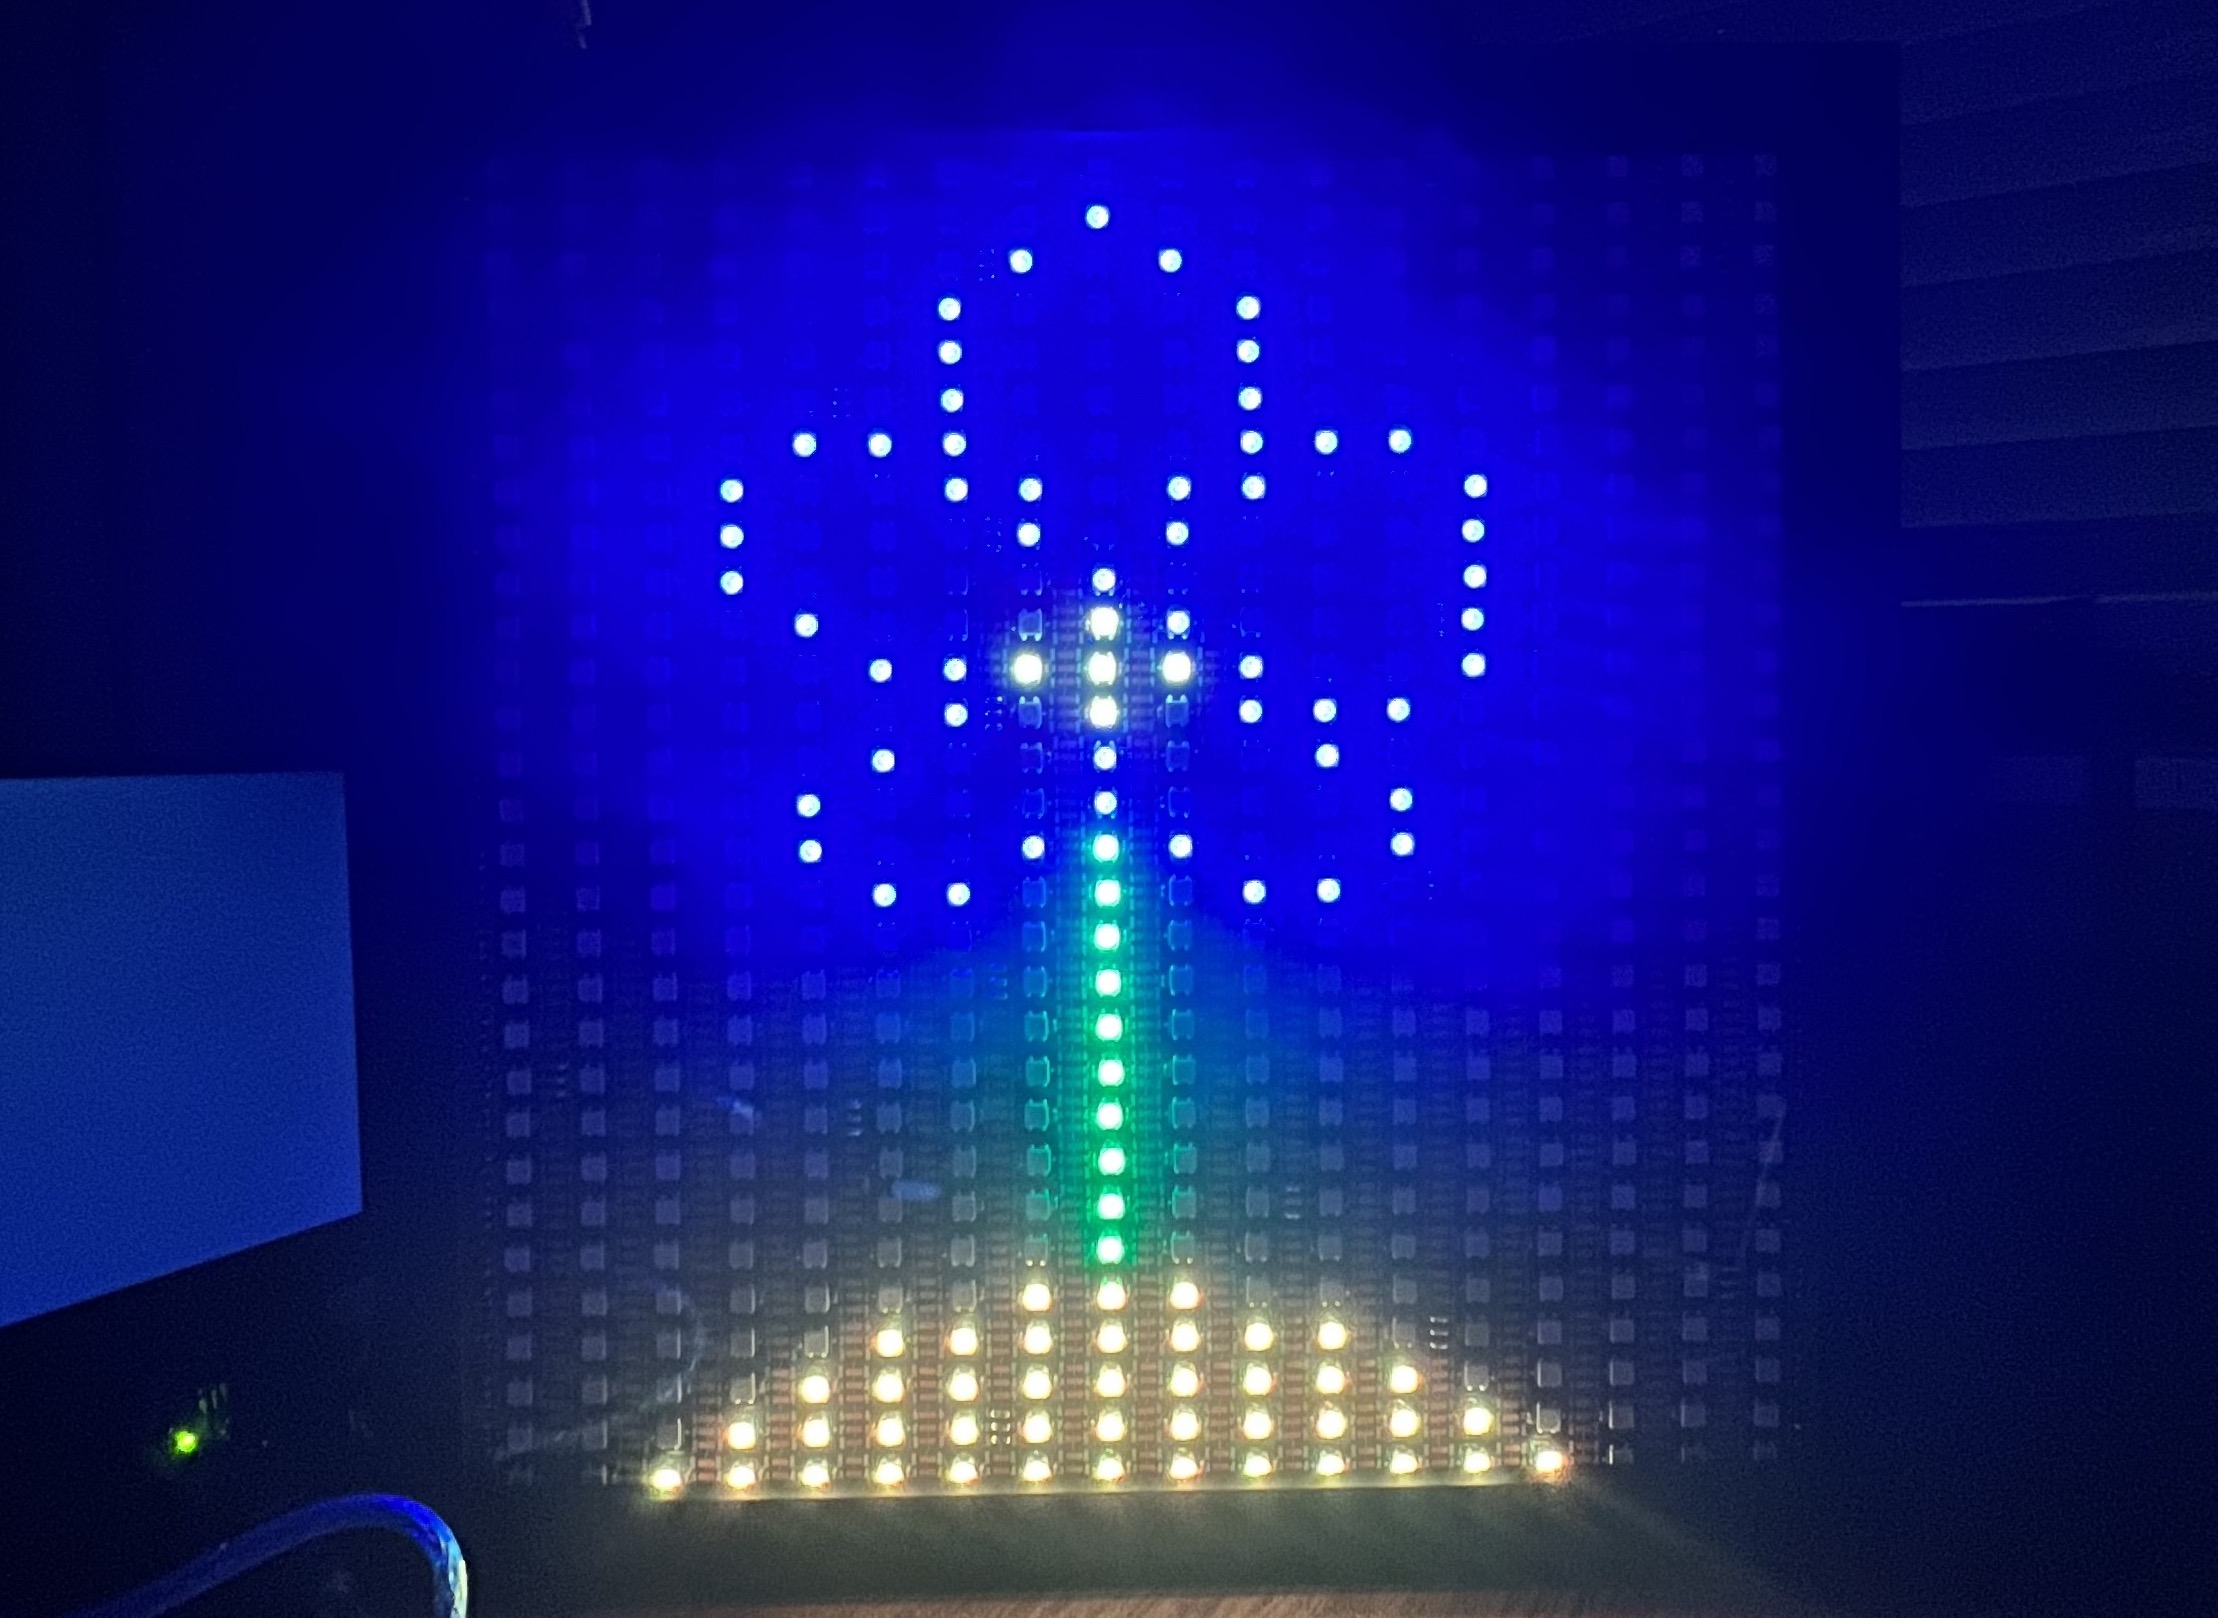 Raspberry Pi LED Display